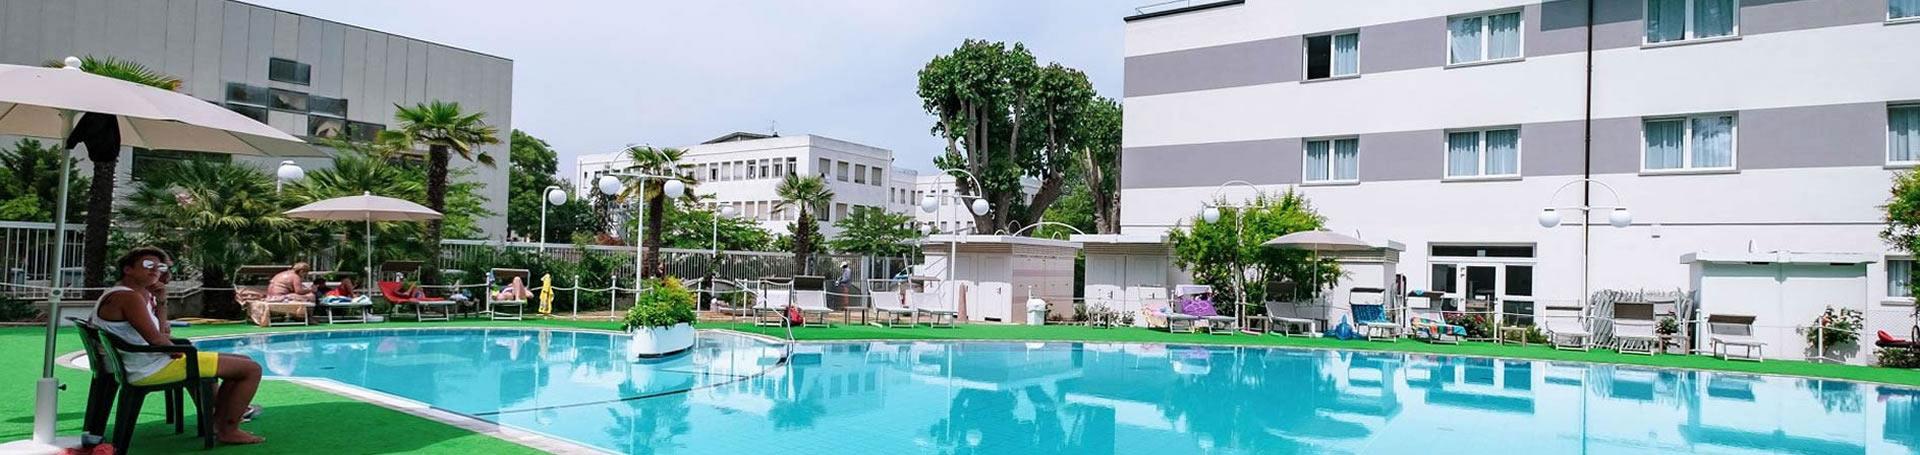 greenvillagecesenatico fr hotel-avec-piscine-cesenatico 009